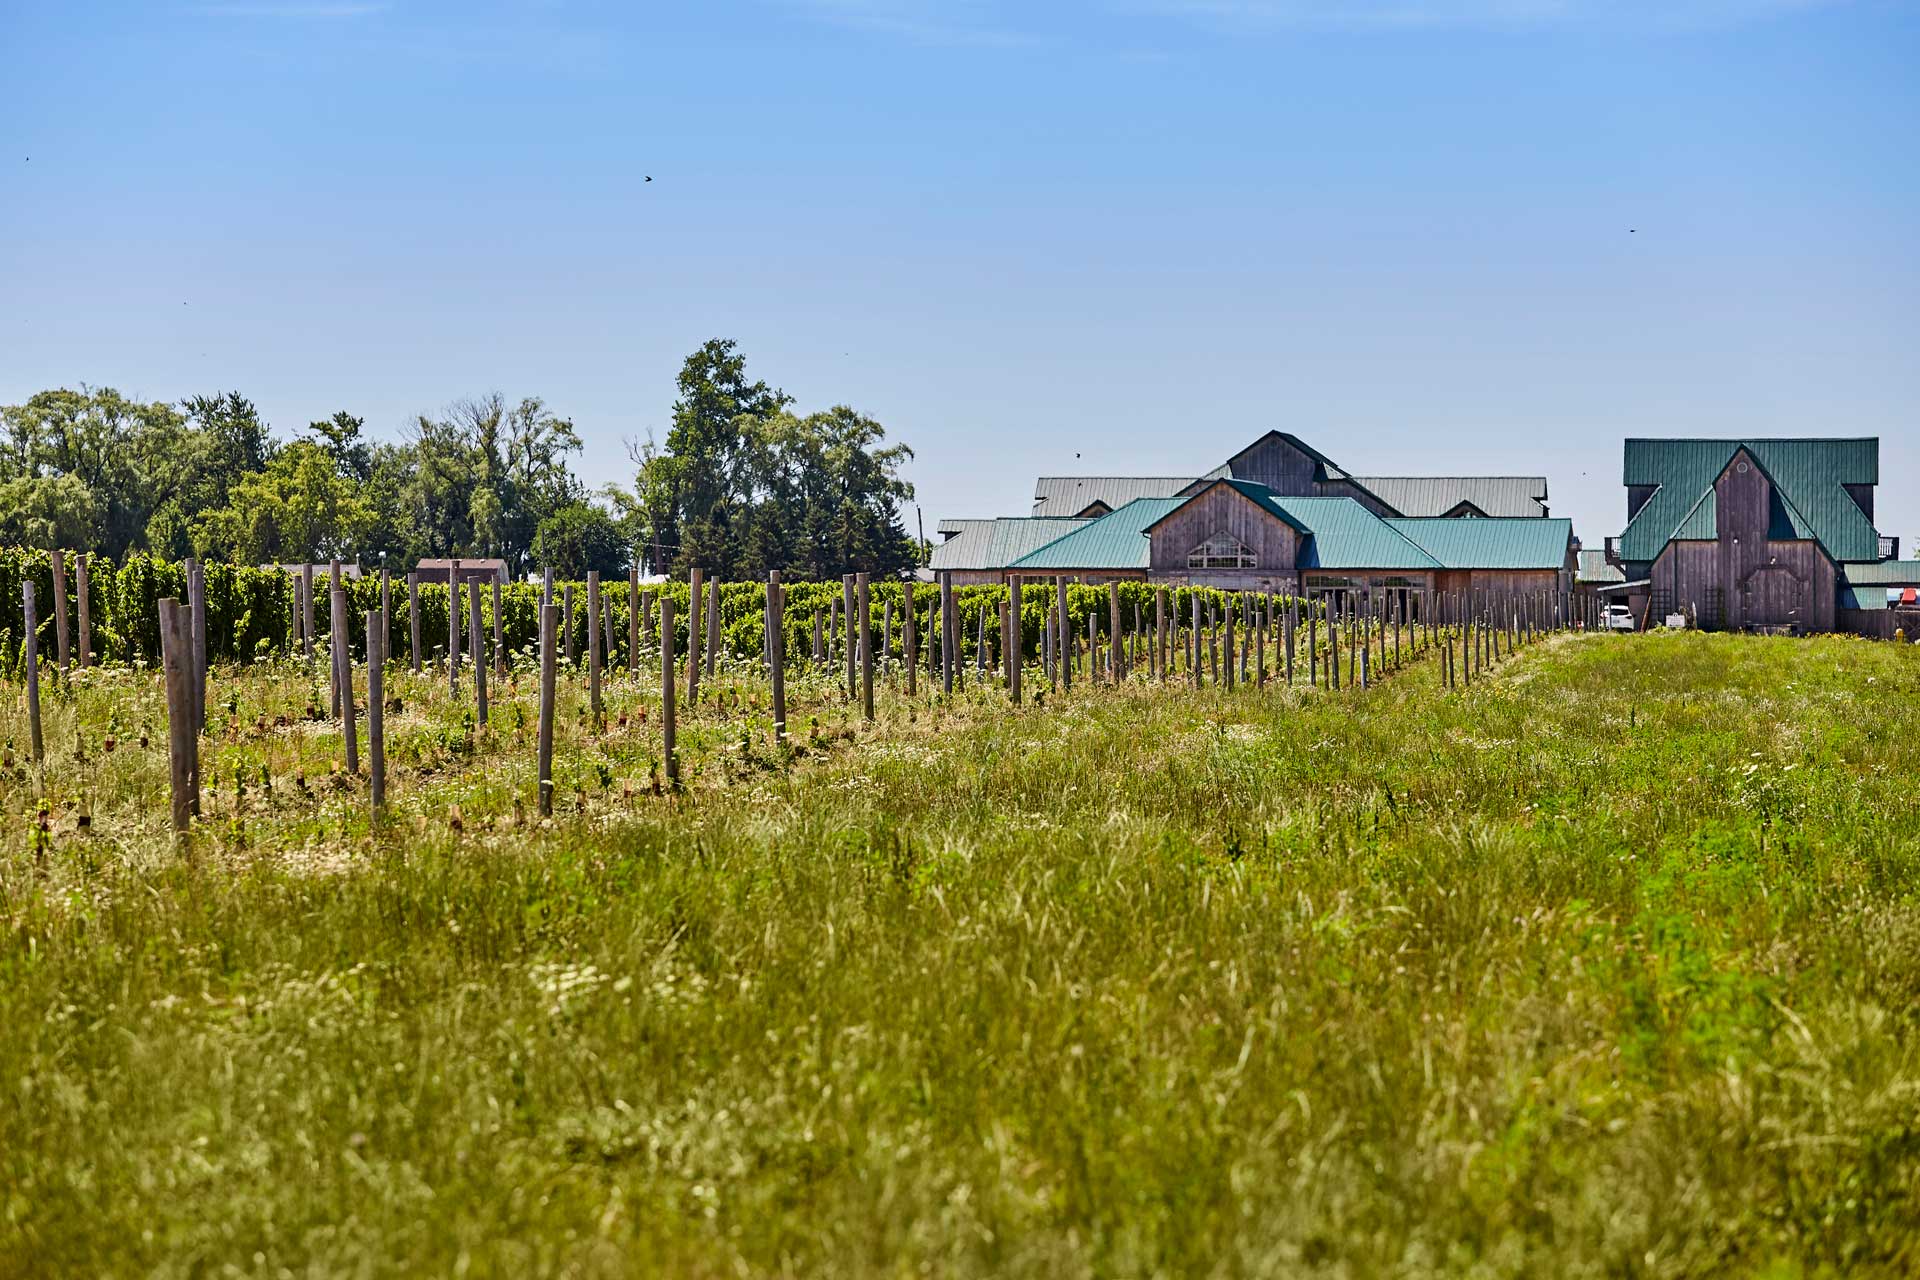 A vineyard in Amherstburg.